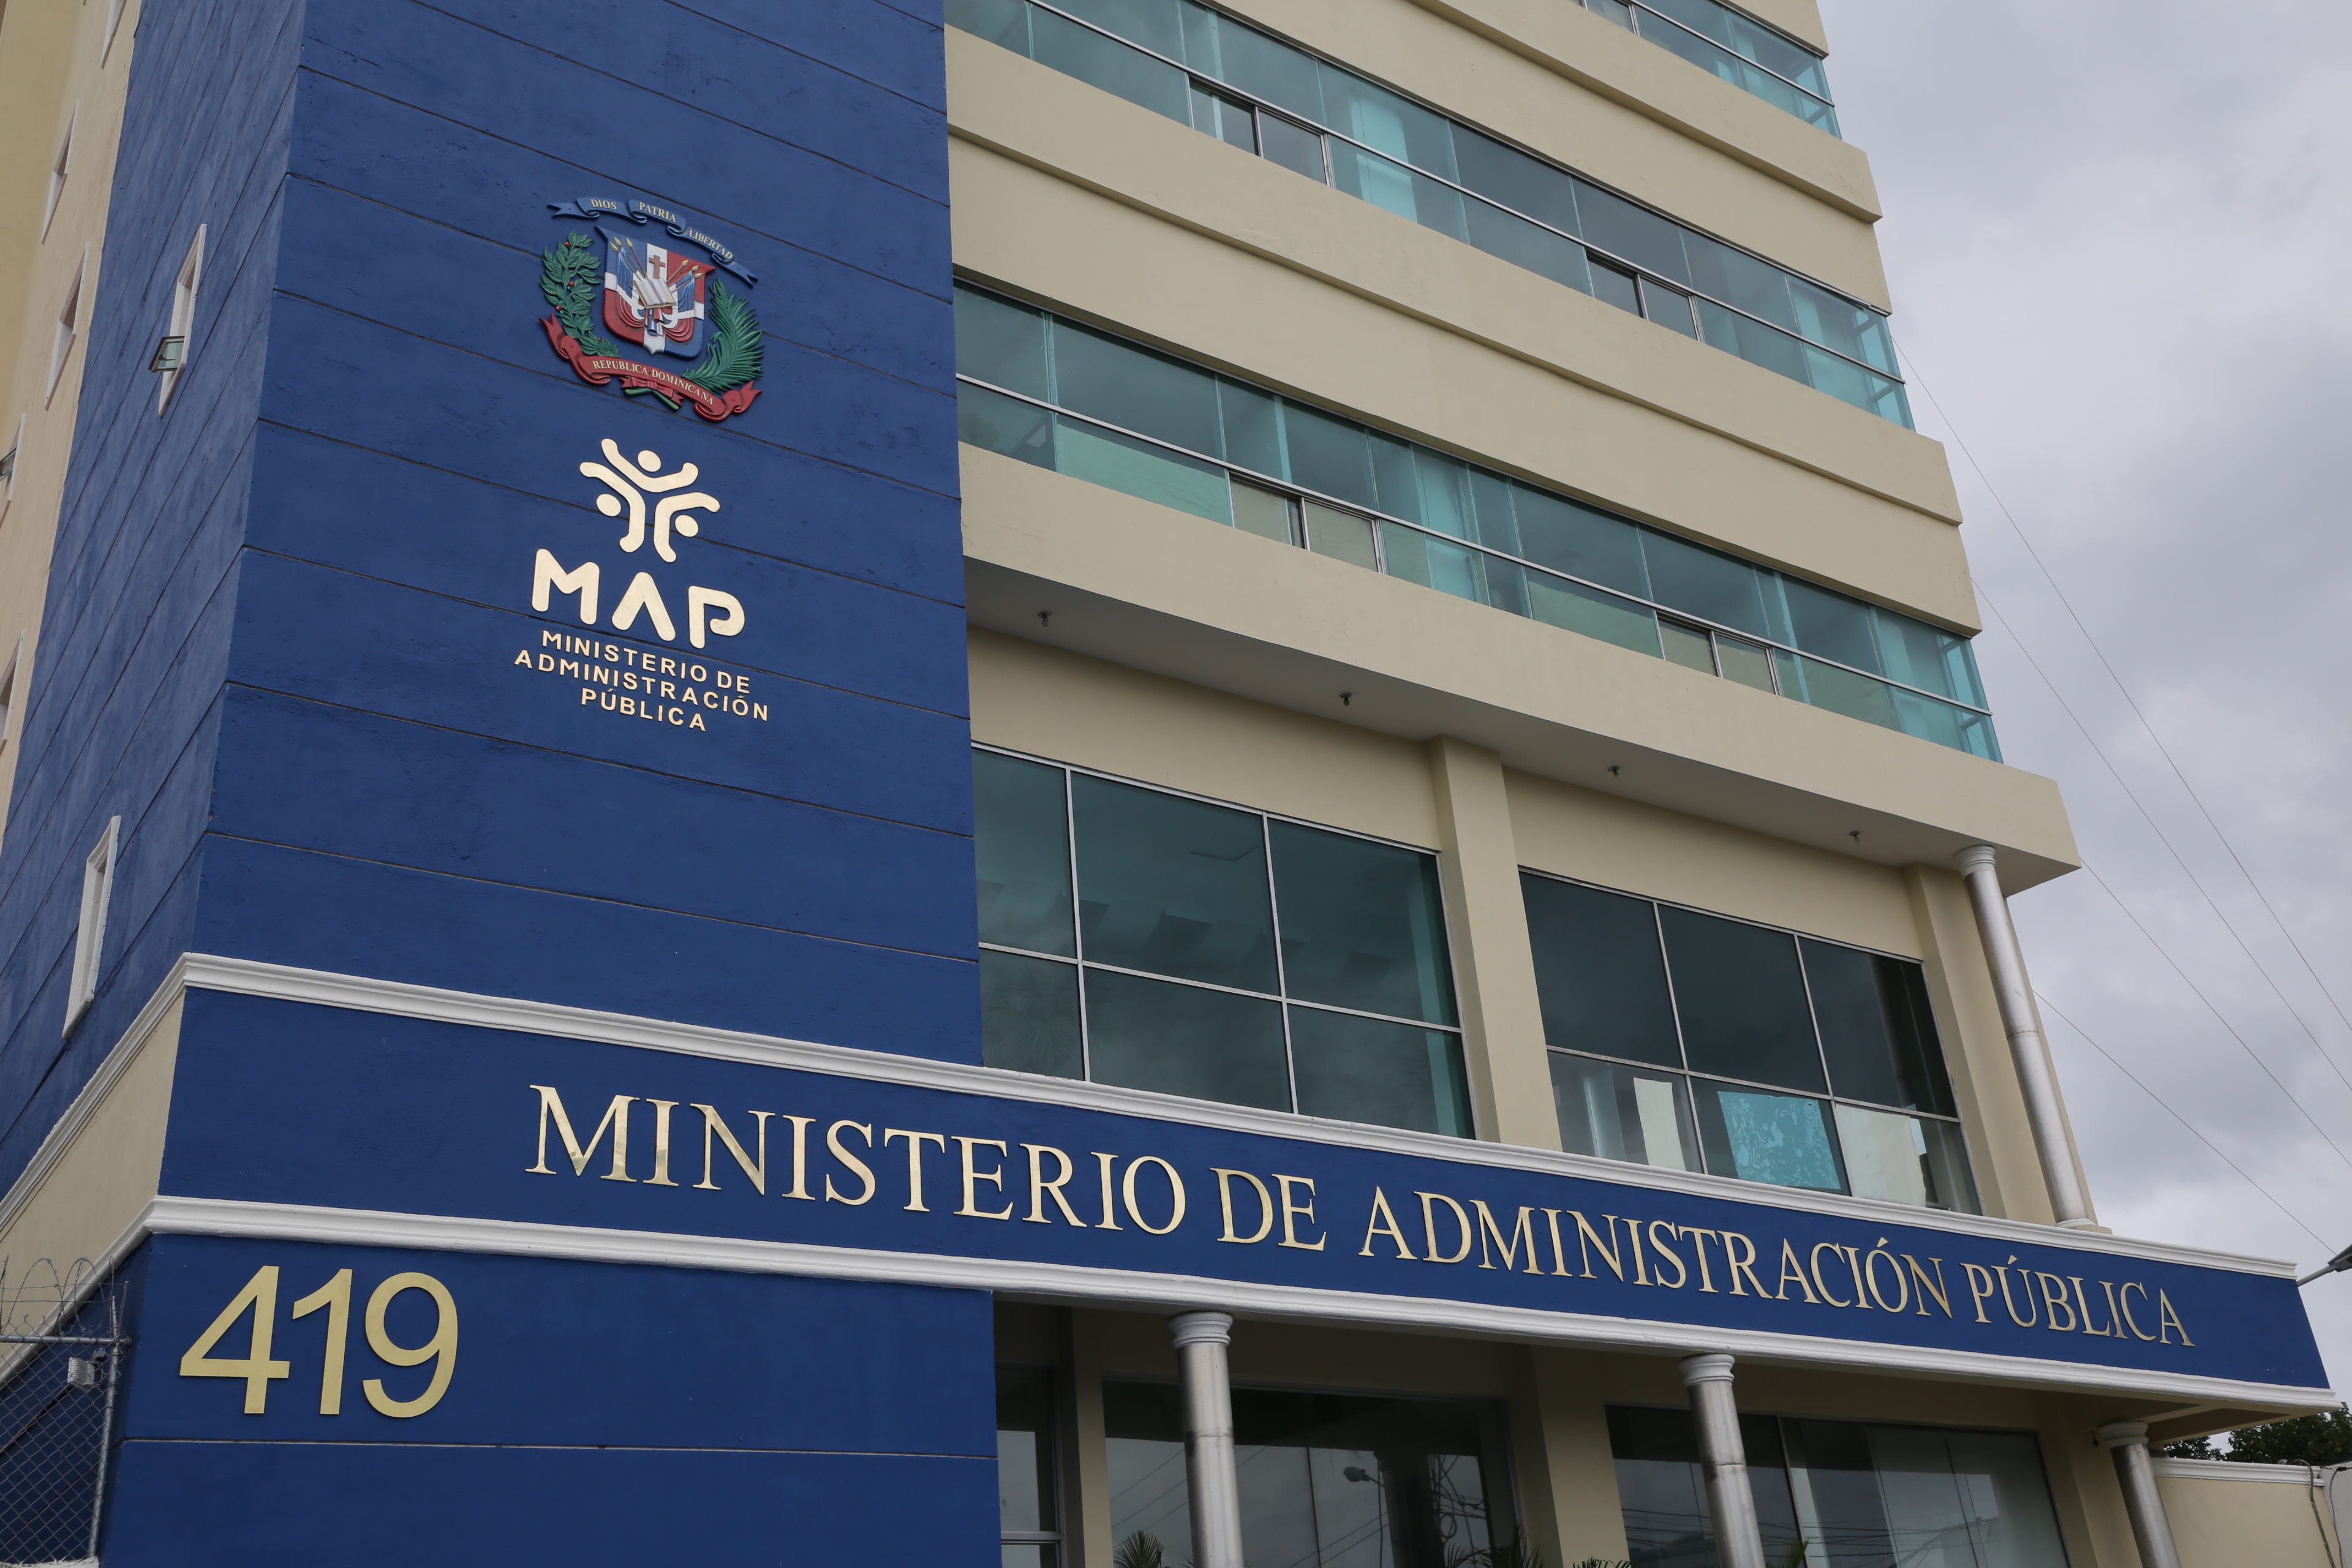 REPÚBLICA DOMINICANA: MAP suspende aprobación de ingreso de nuevo personal e incrementos salariales hasta después de las elecciones